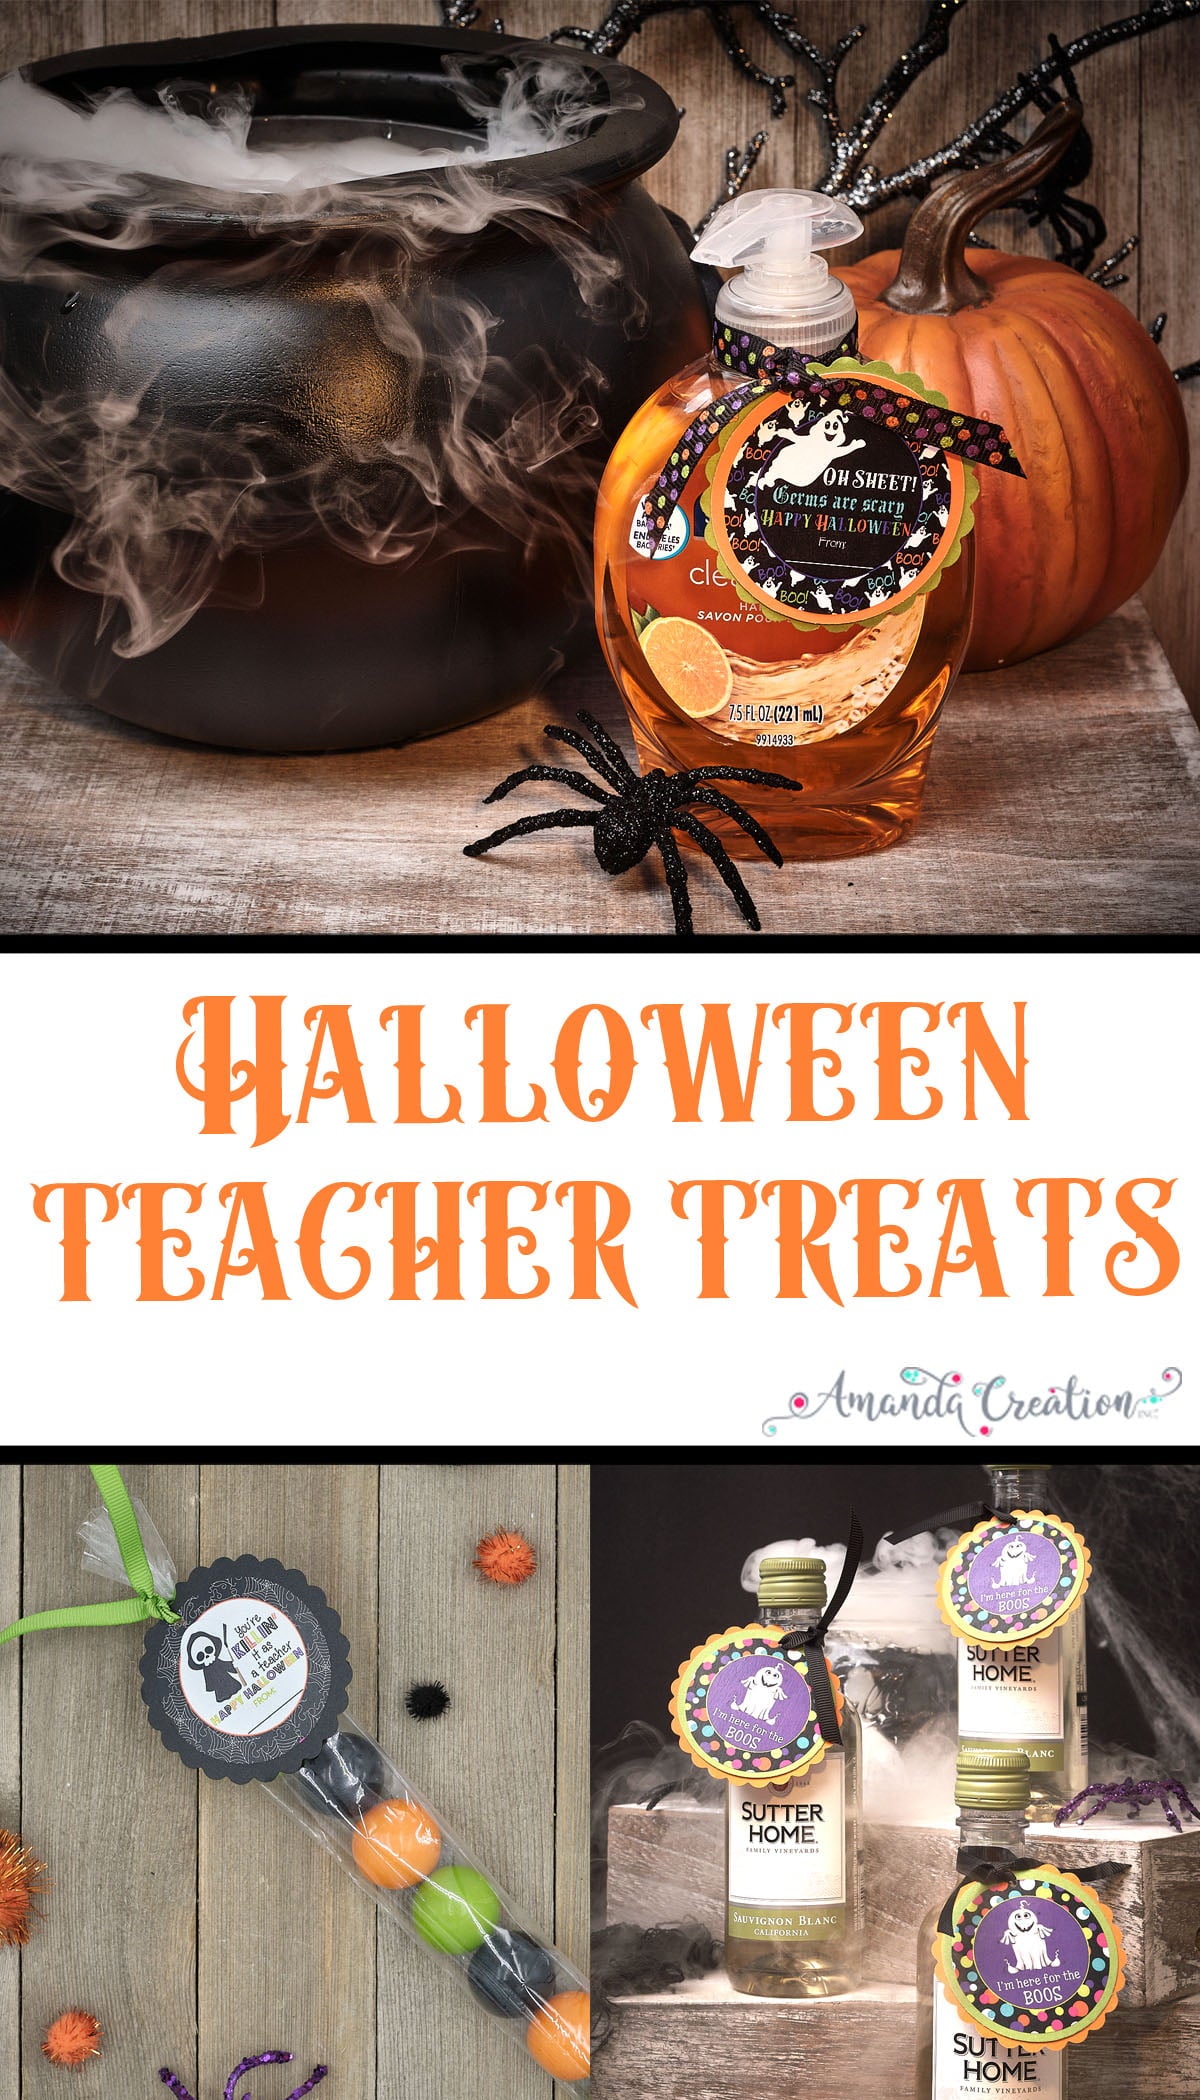 Halloween teacher treats